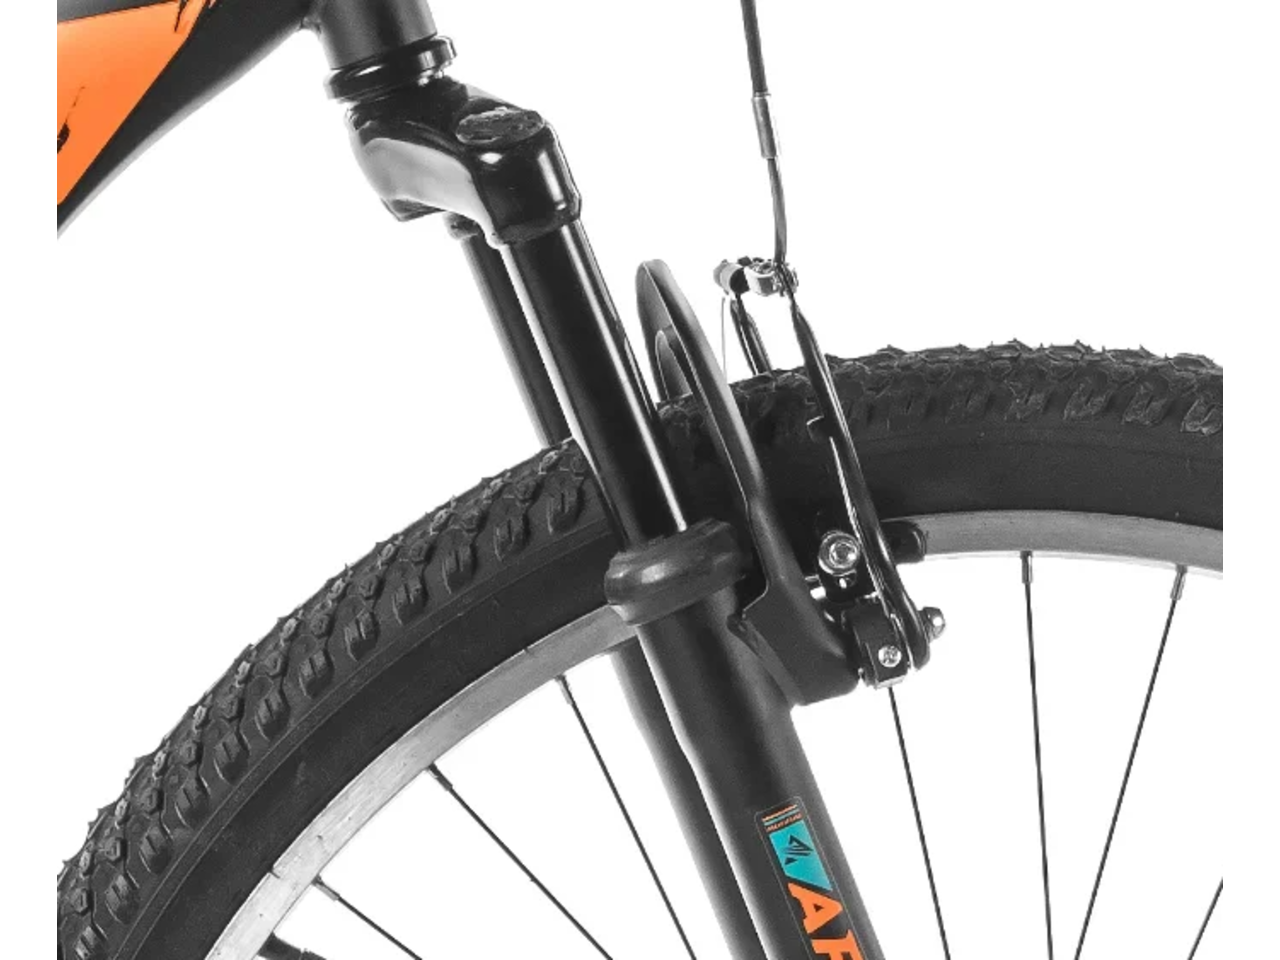 Велосипед ARENA Storm 2021 (18, черный/оранжевый)